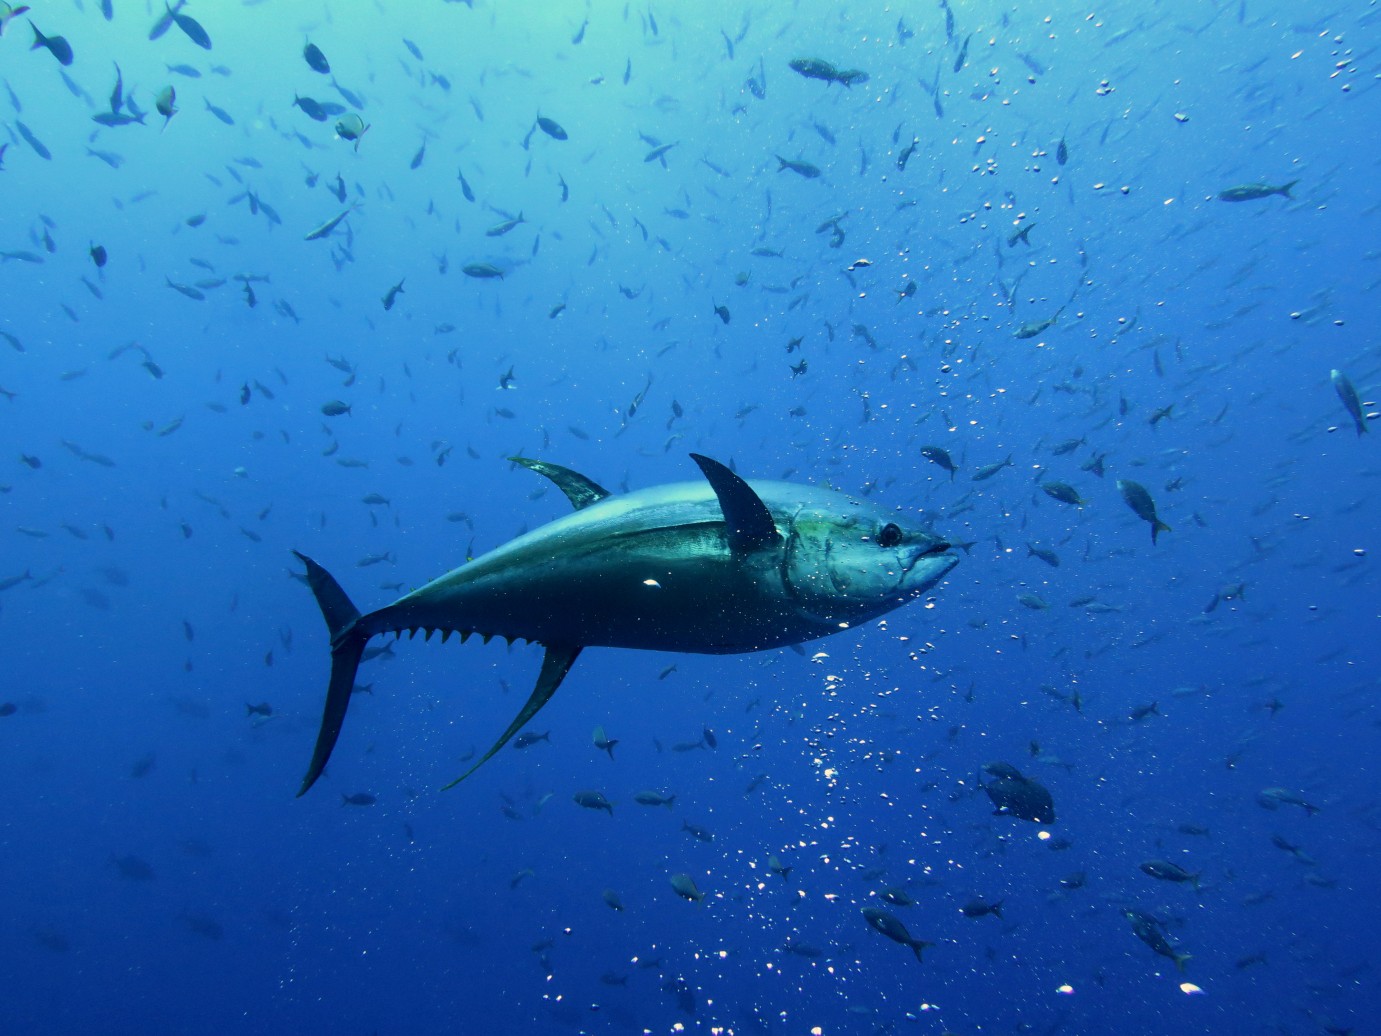 large yellowfin tuna amongst school of small fish